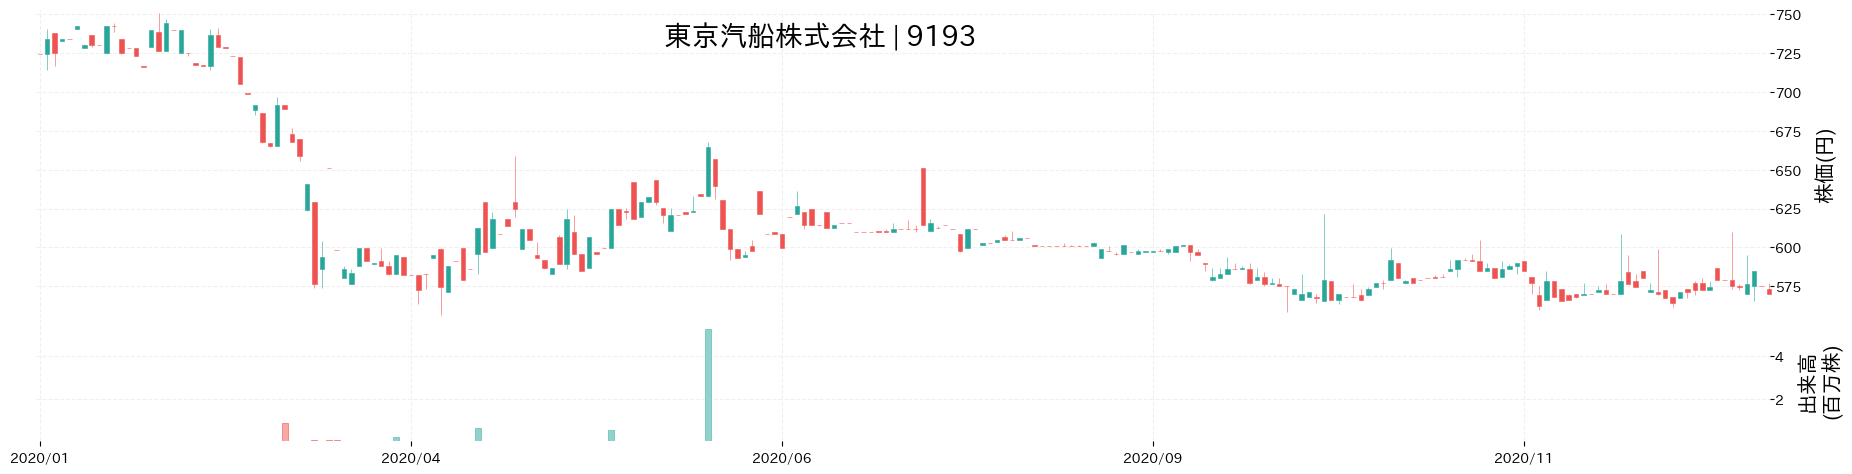 東京汽船の株価推移(2020)